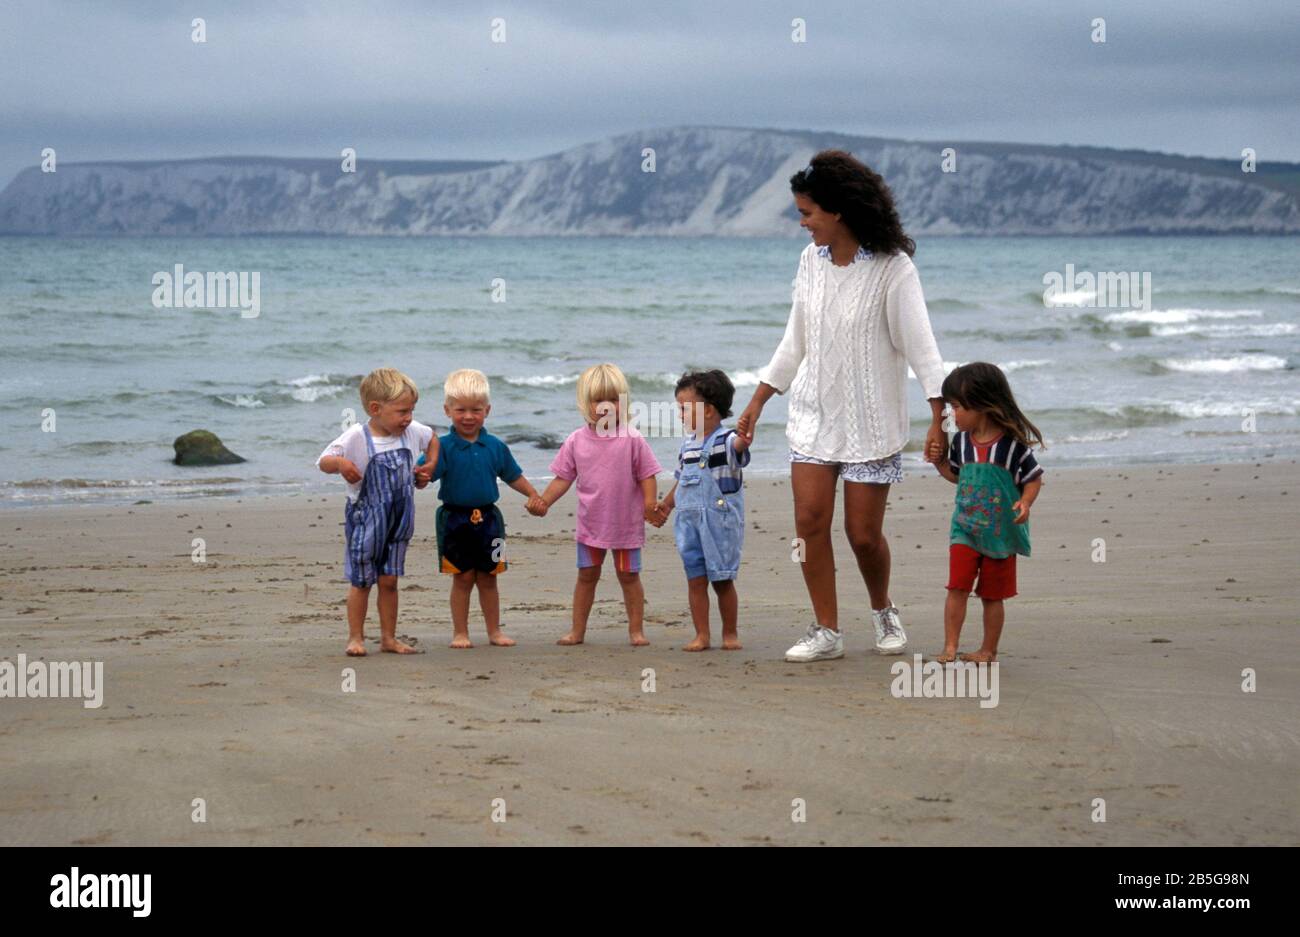 Femme marchant sur la plage avec 5 enfants en bas âge en journée, Isle of Wight, Angleterre Banque D'Images